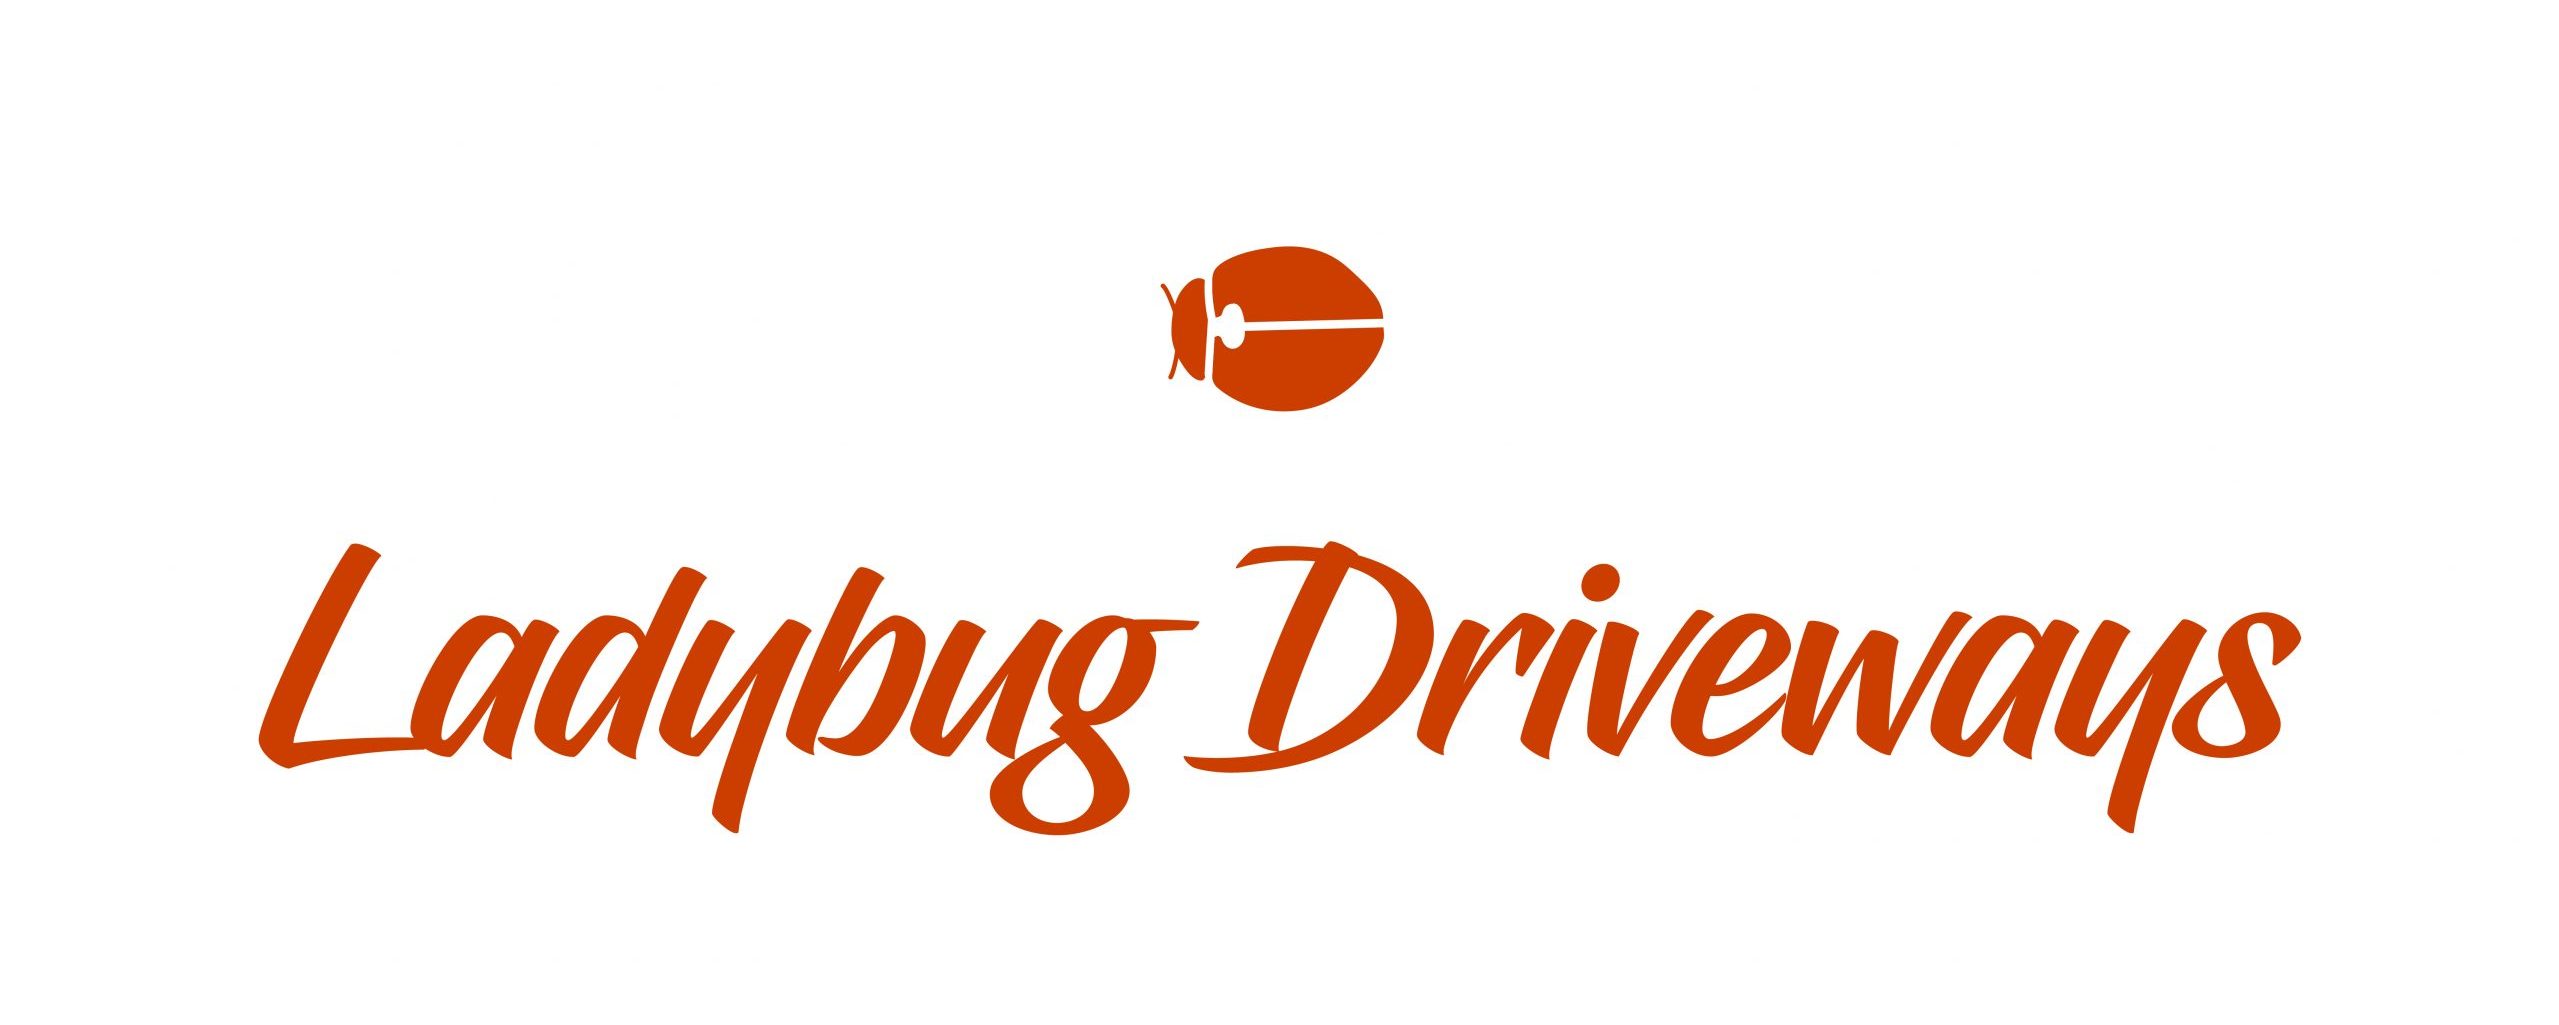 Ladybug Driveways